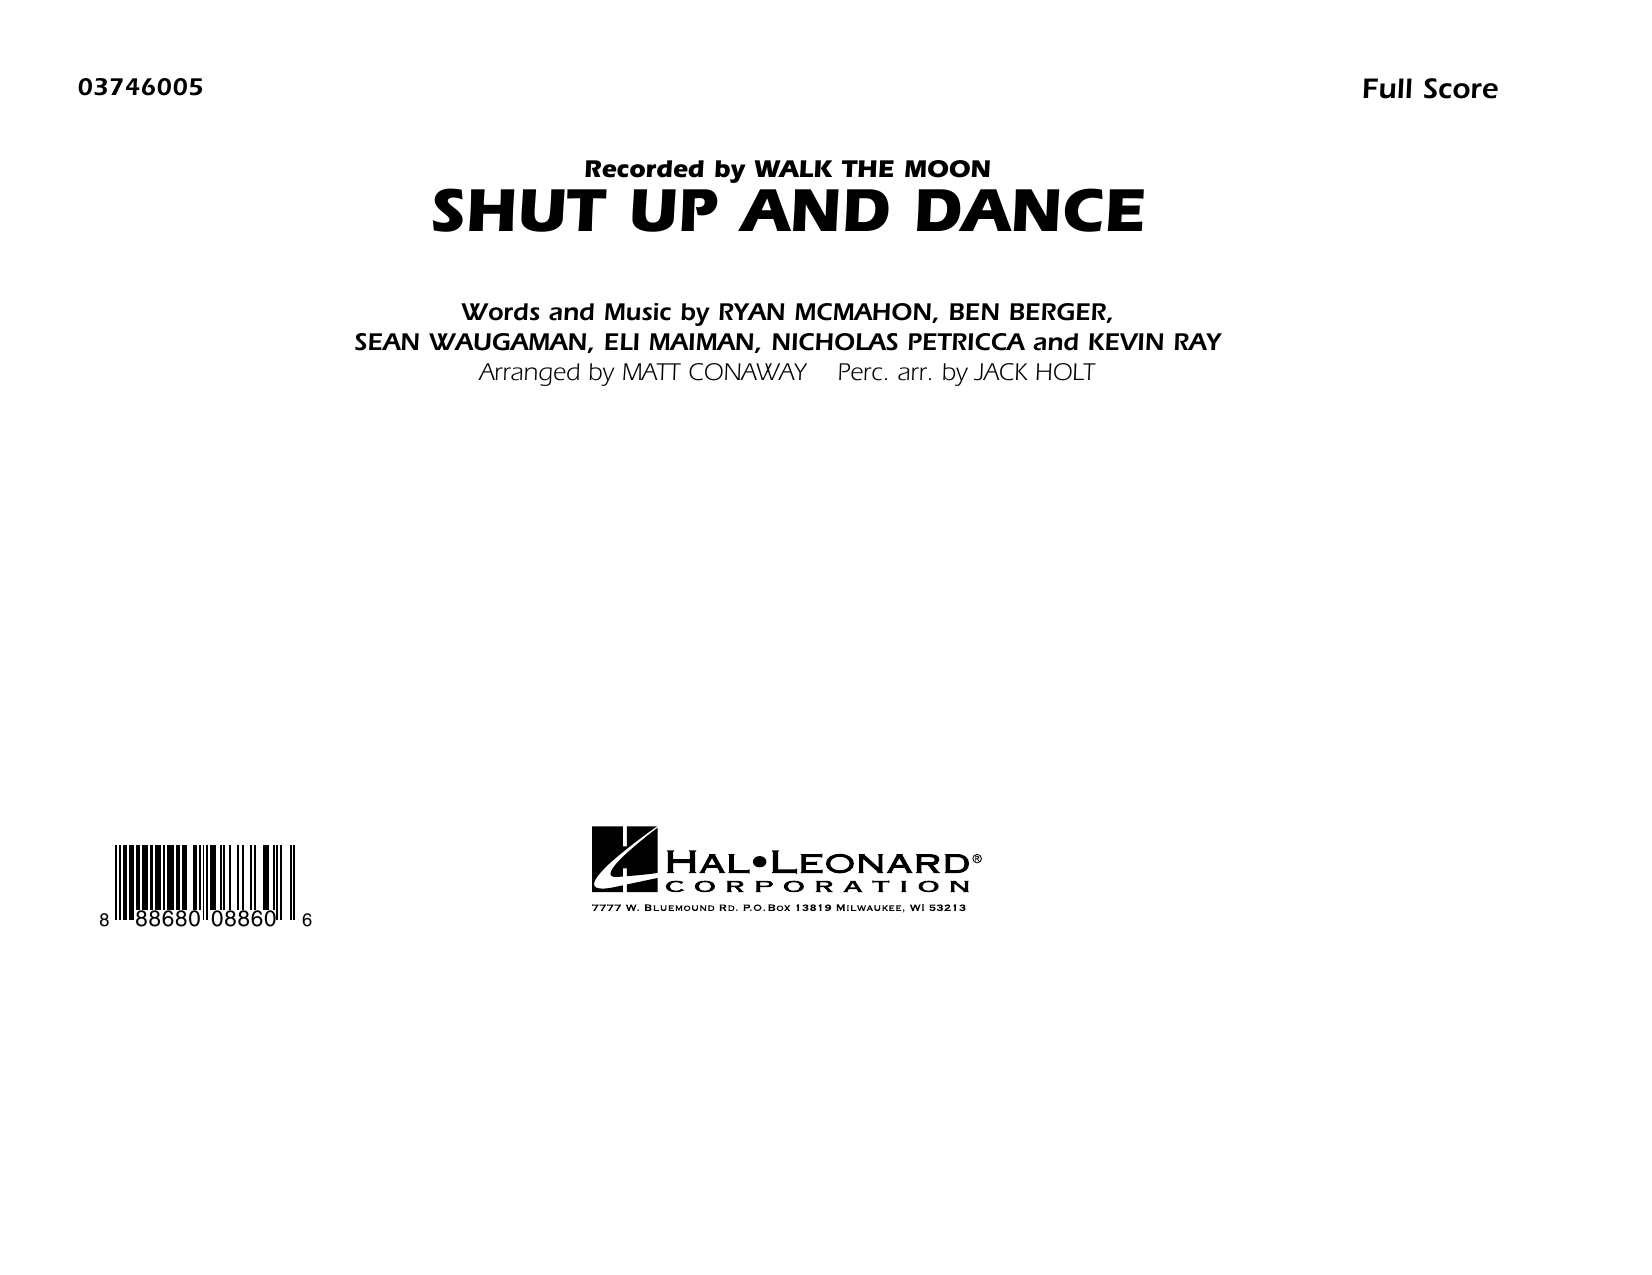 Download Walk The Moon Shut Up and Dance (Arr. Matt Conaway) - Sheet Music